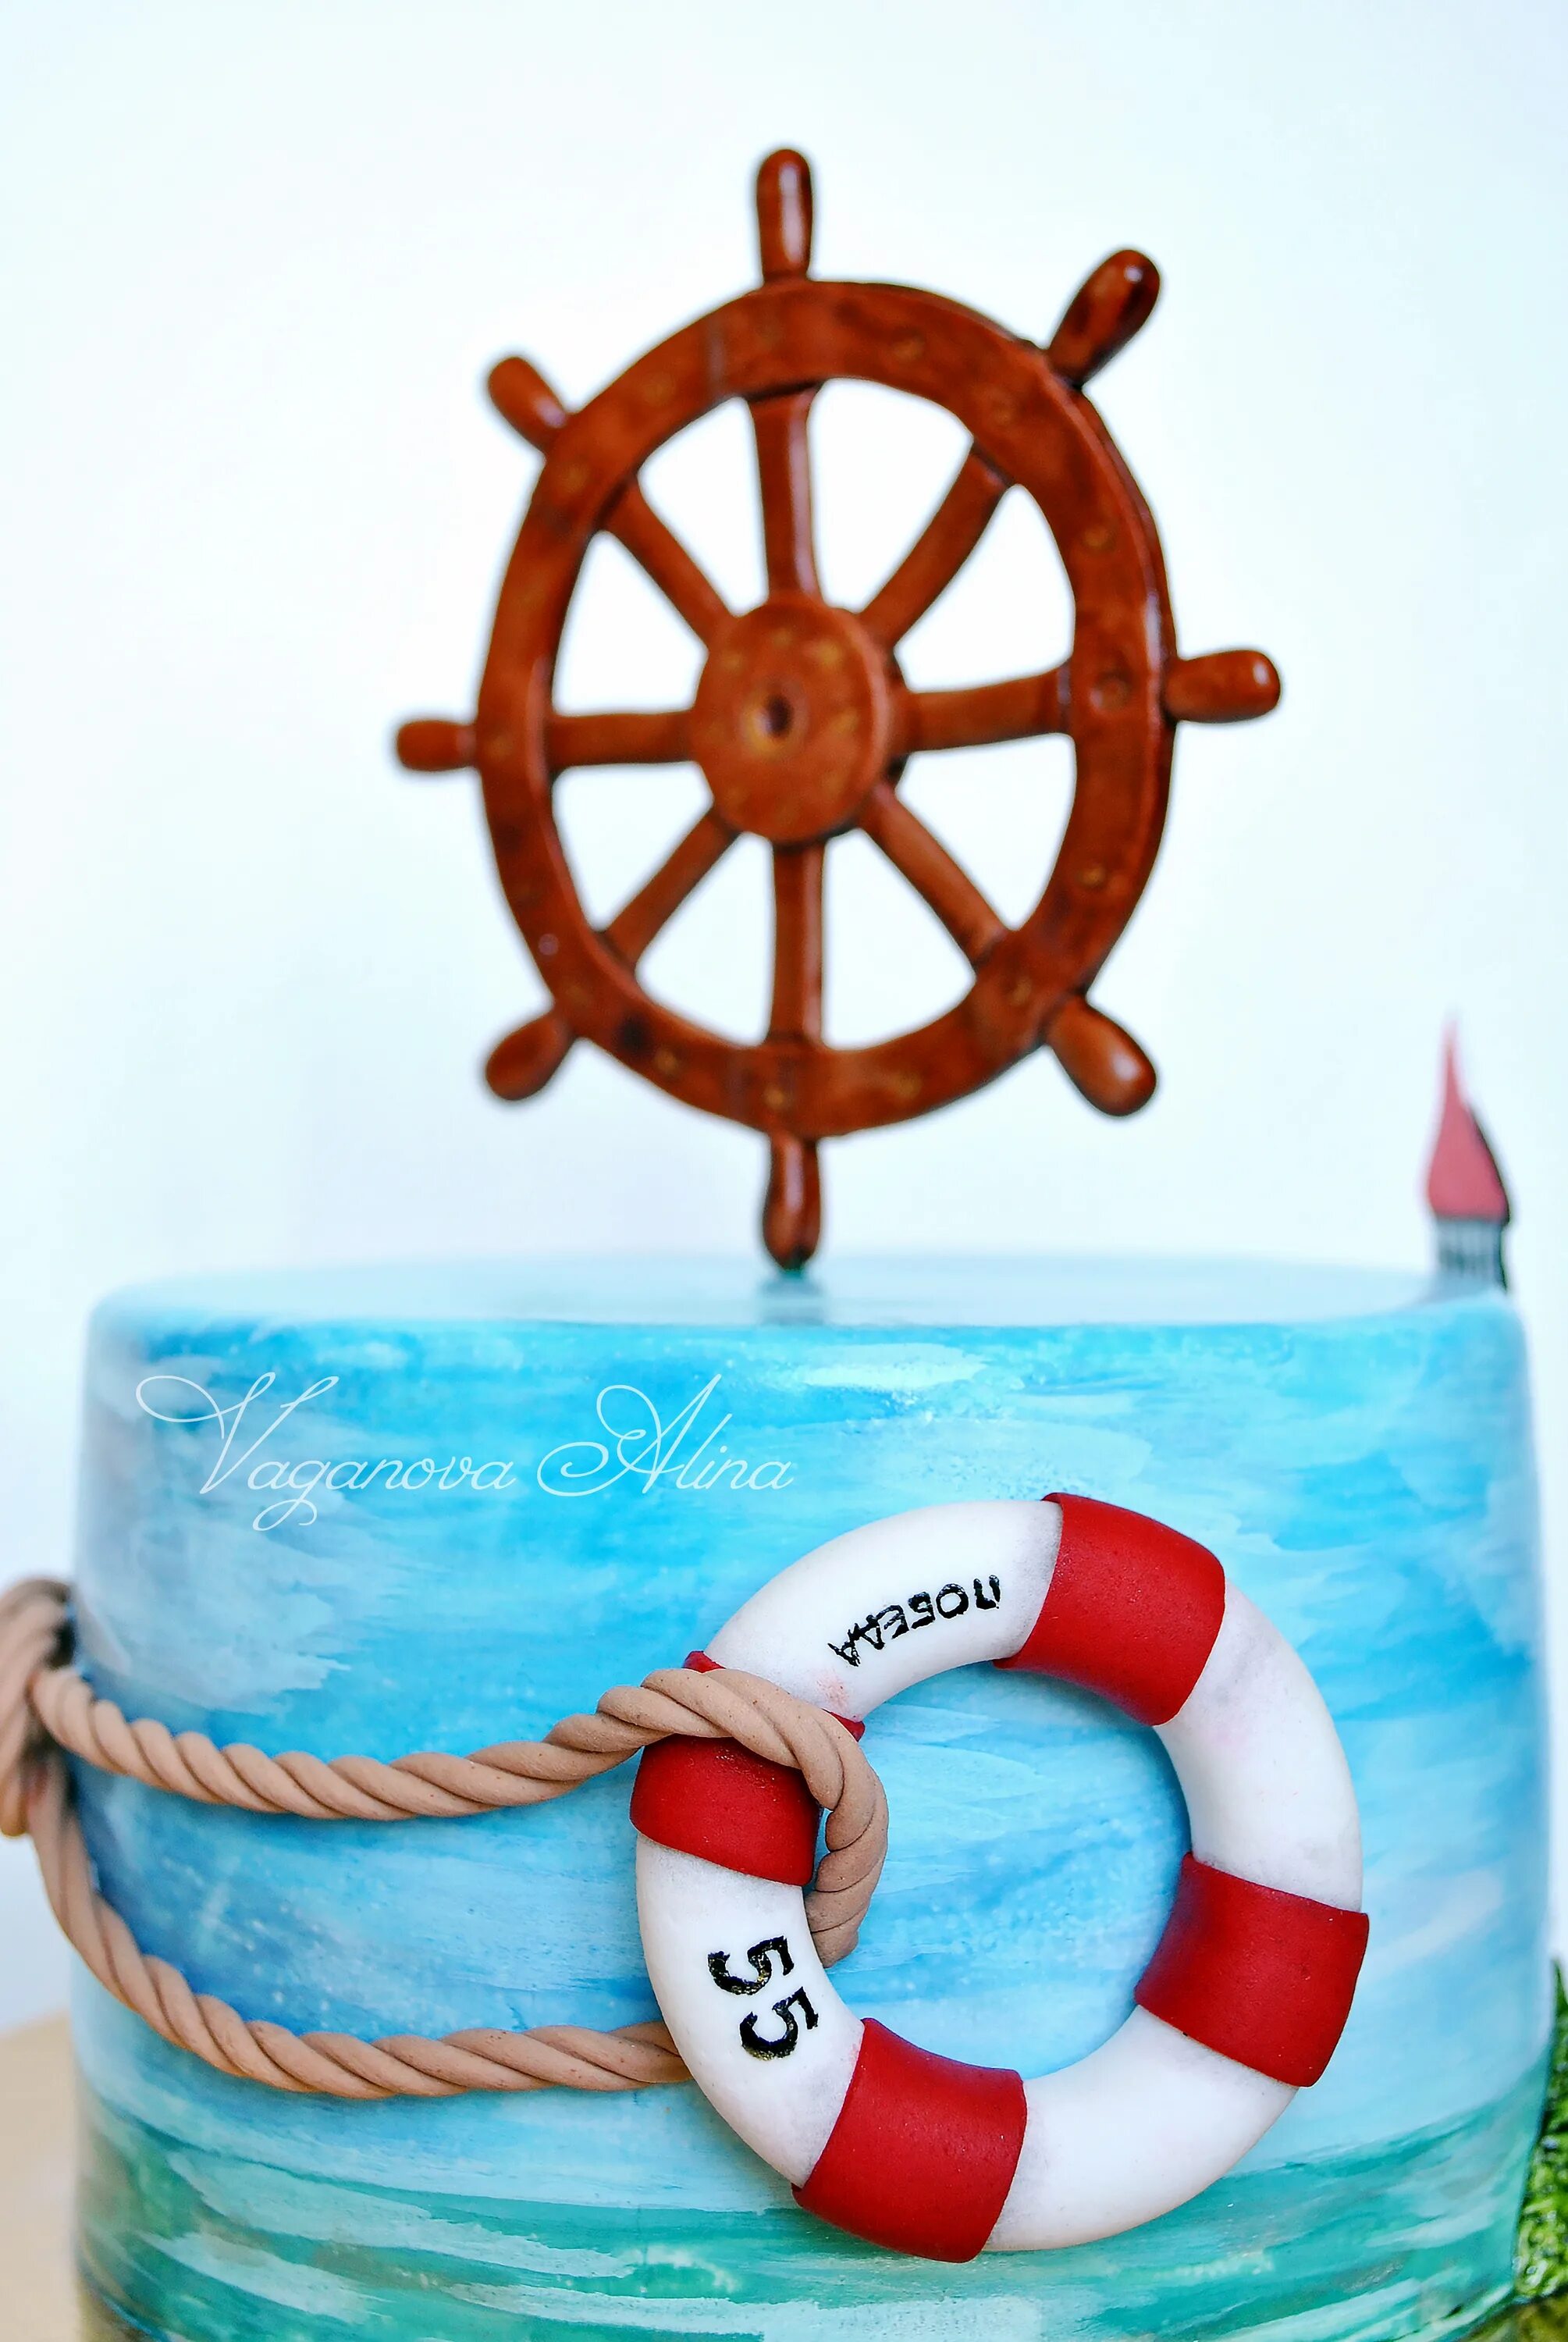 Морской день рождения мужчине. Торт морская тематика. День рождения в морском стиле. Торт с якорем и штурвалом. Торт в морской тематике для девочки.